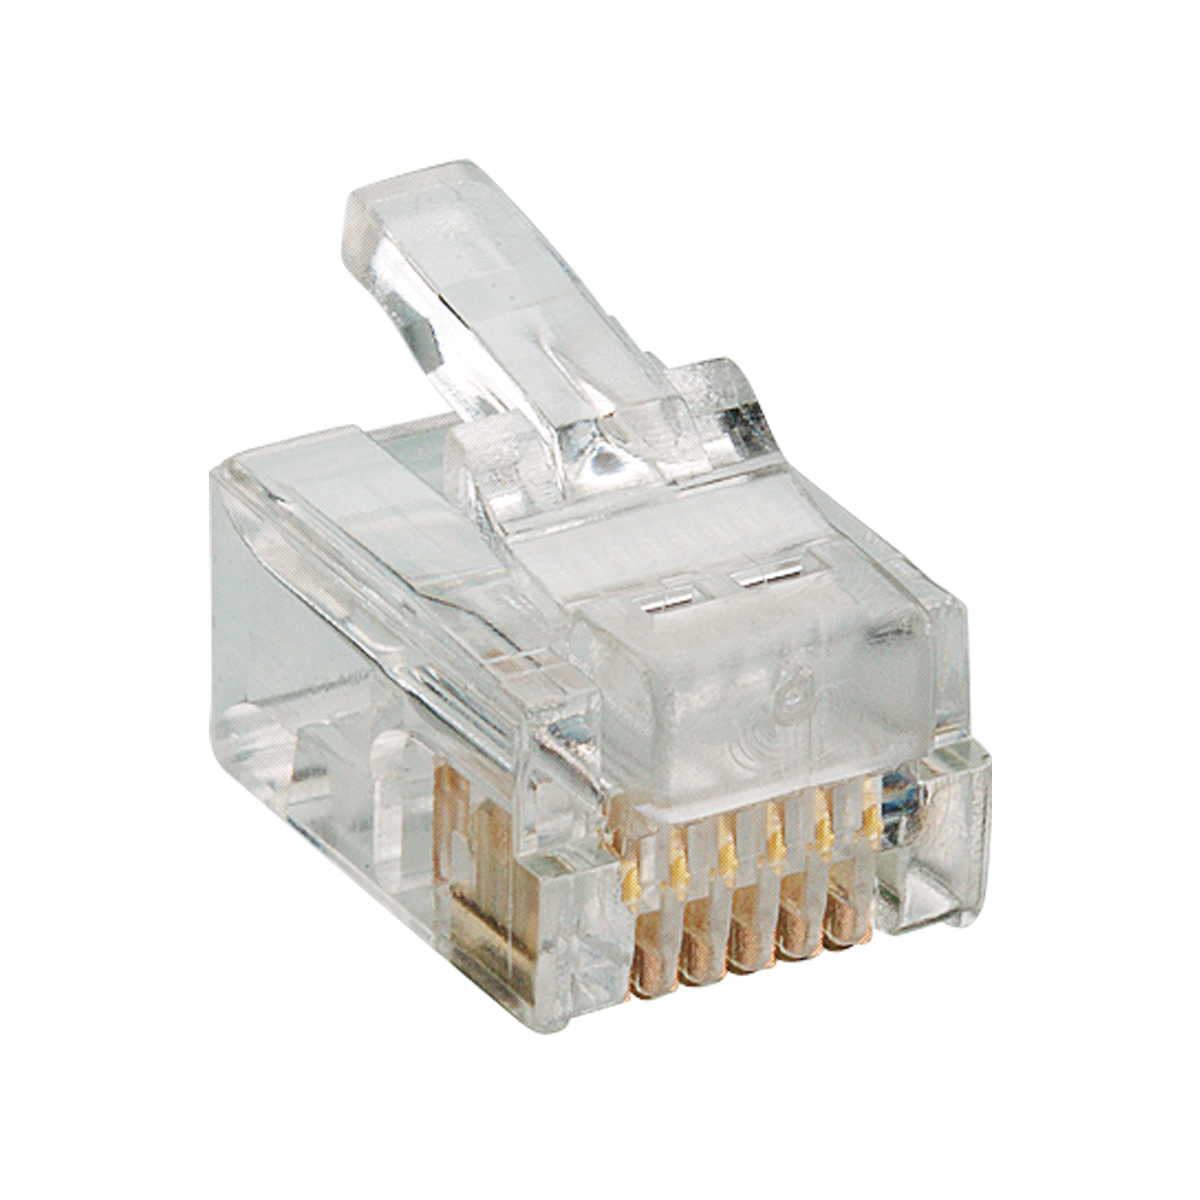 Lumberg: P 128 (Series 25 | Modular connectors)